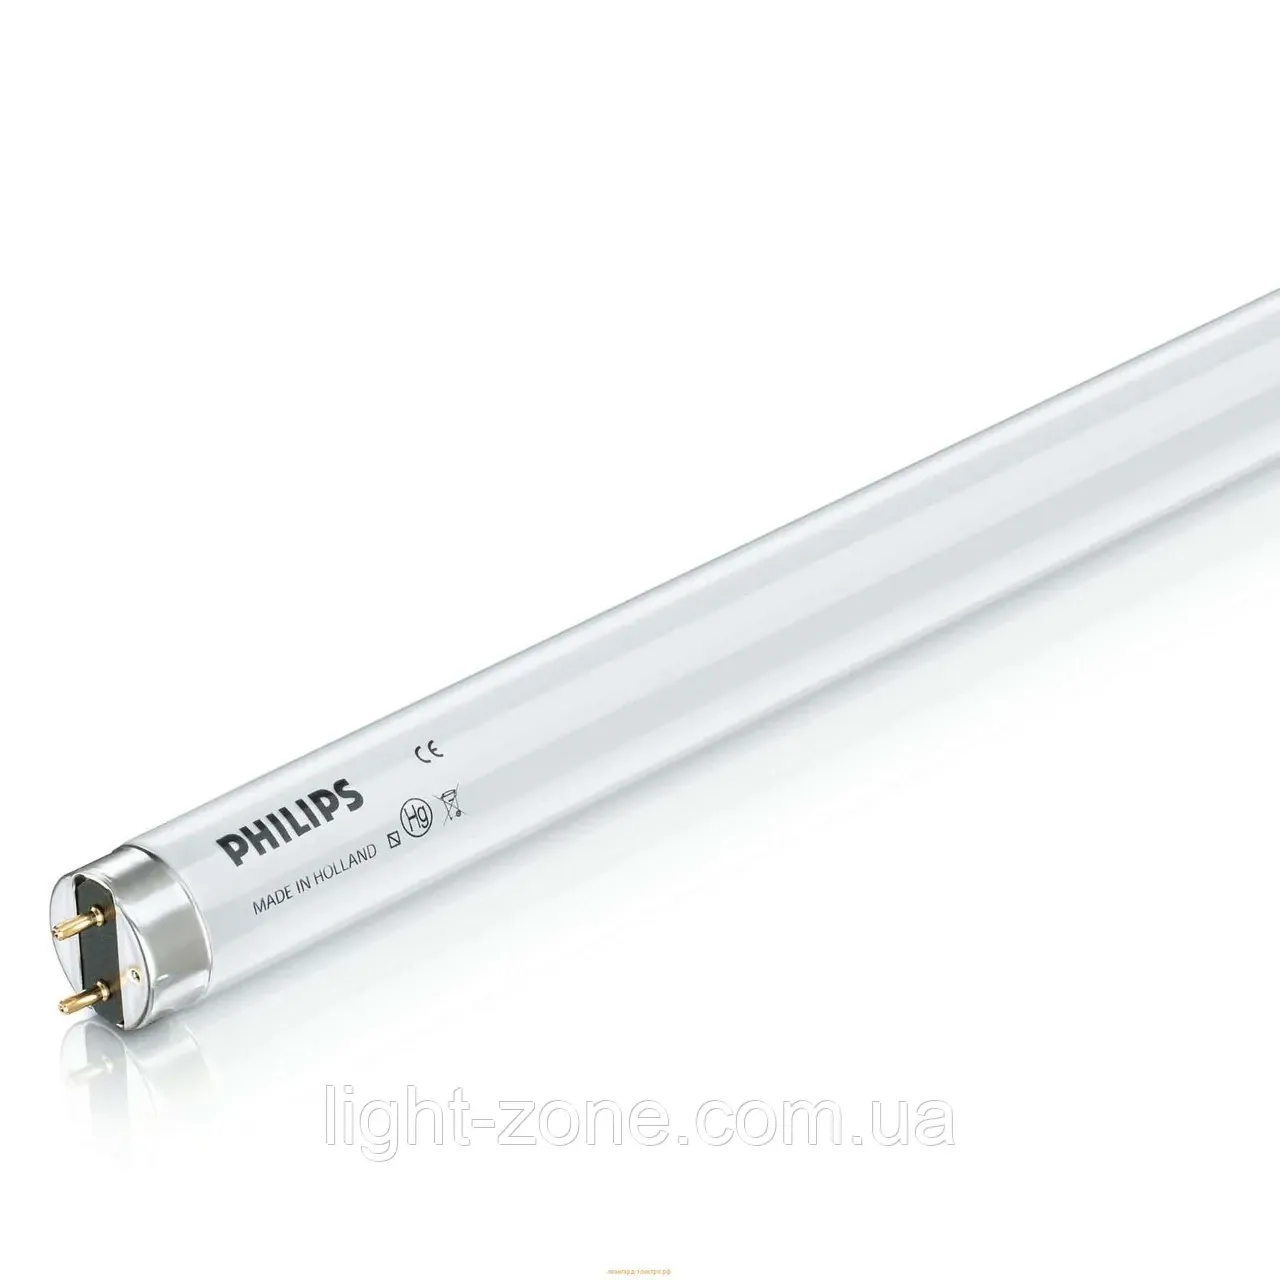 Ультрафиолетовая лампа UV 55W Philips#1